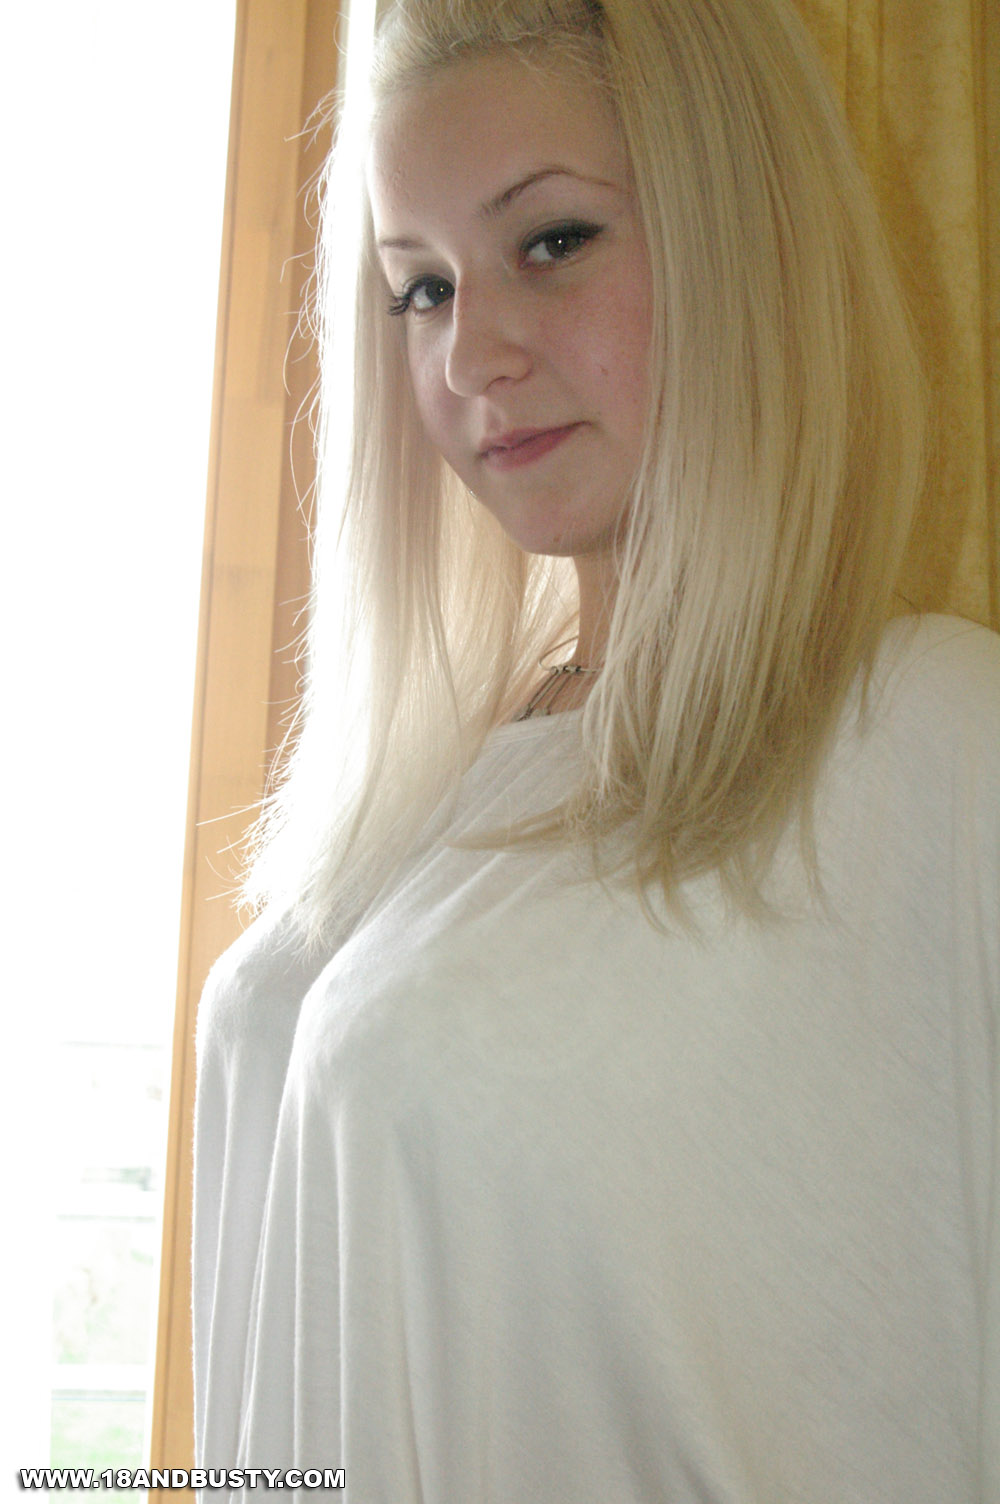 wpid-blonde-busty-coed-beauty2.jpg